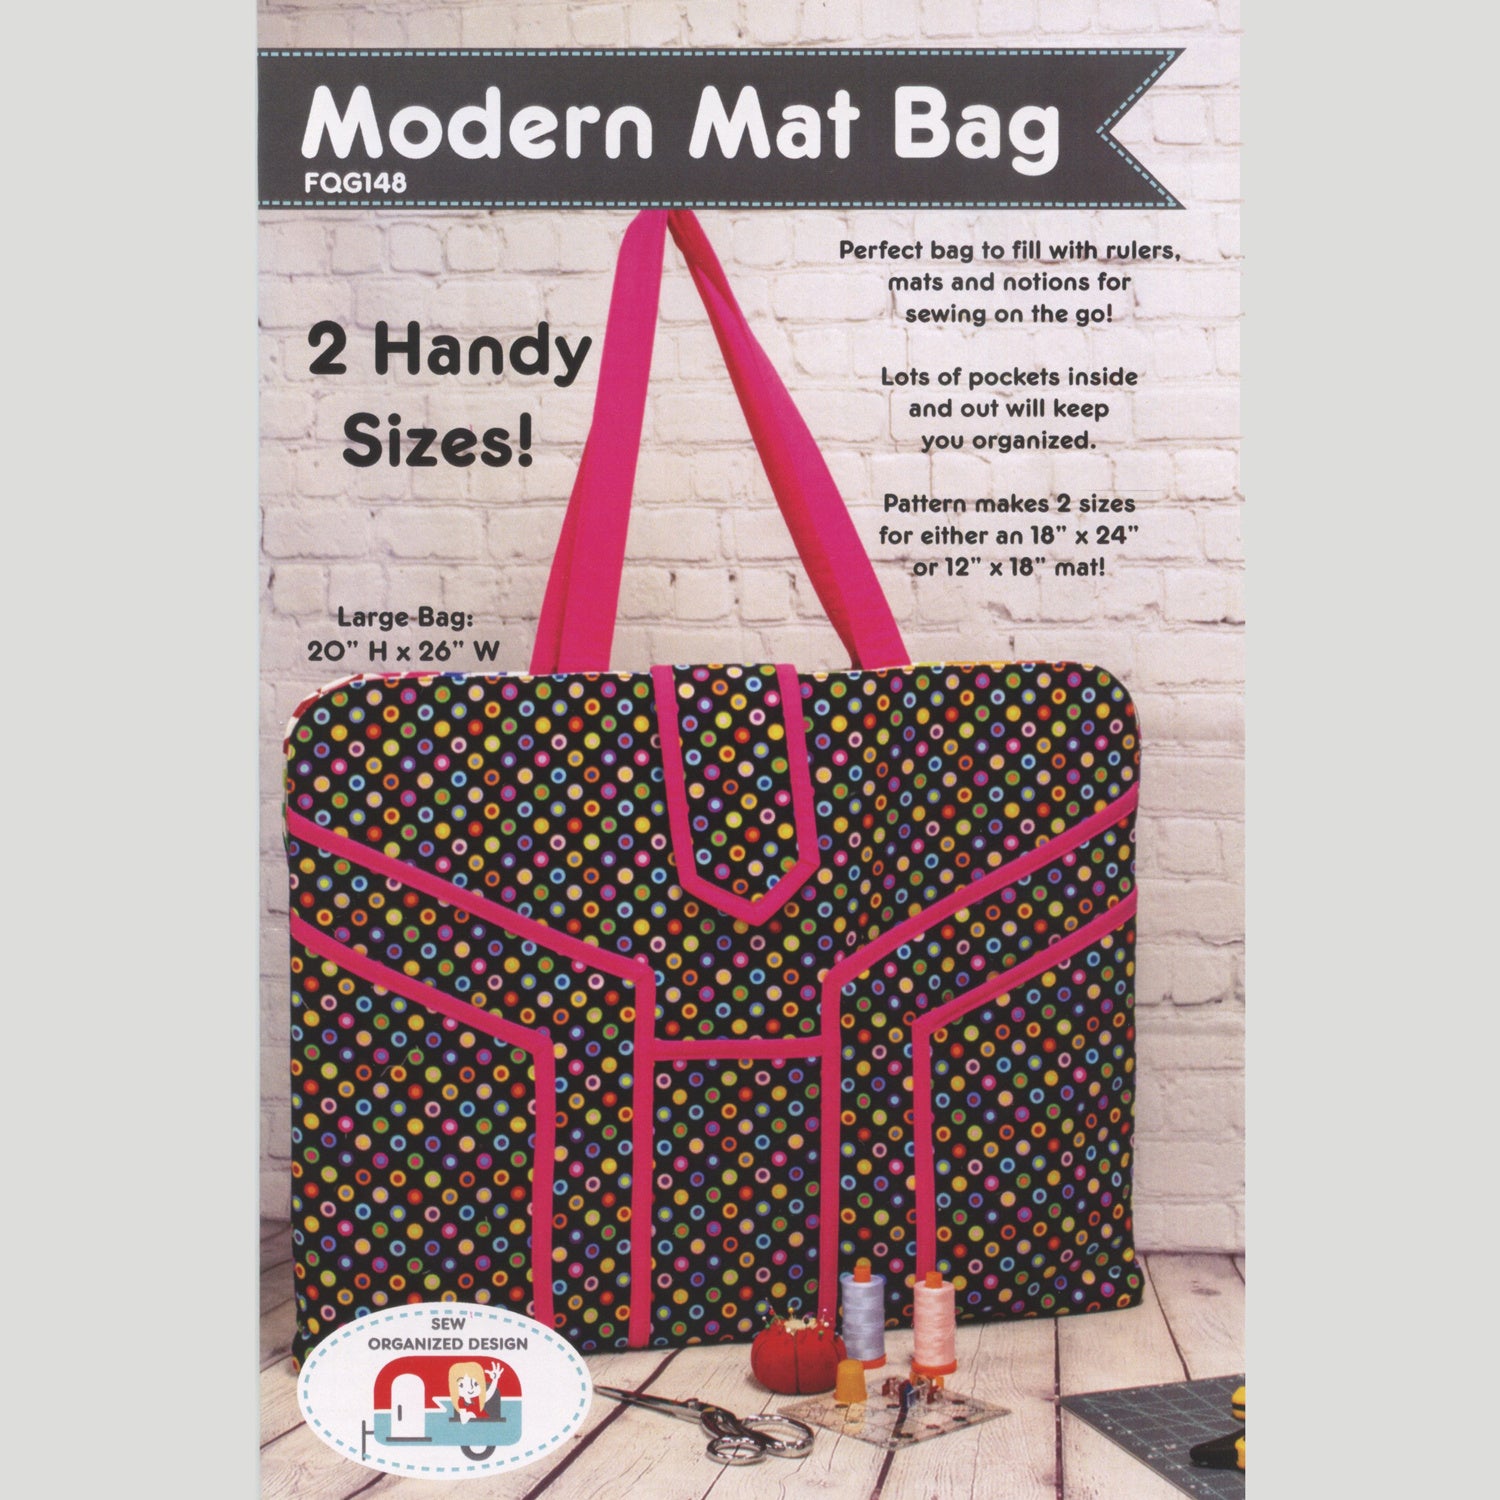 Car Seat Organizer FREE sewing pattern - Sew Modern Bags